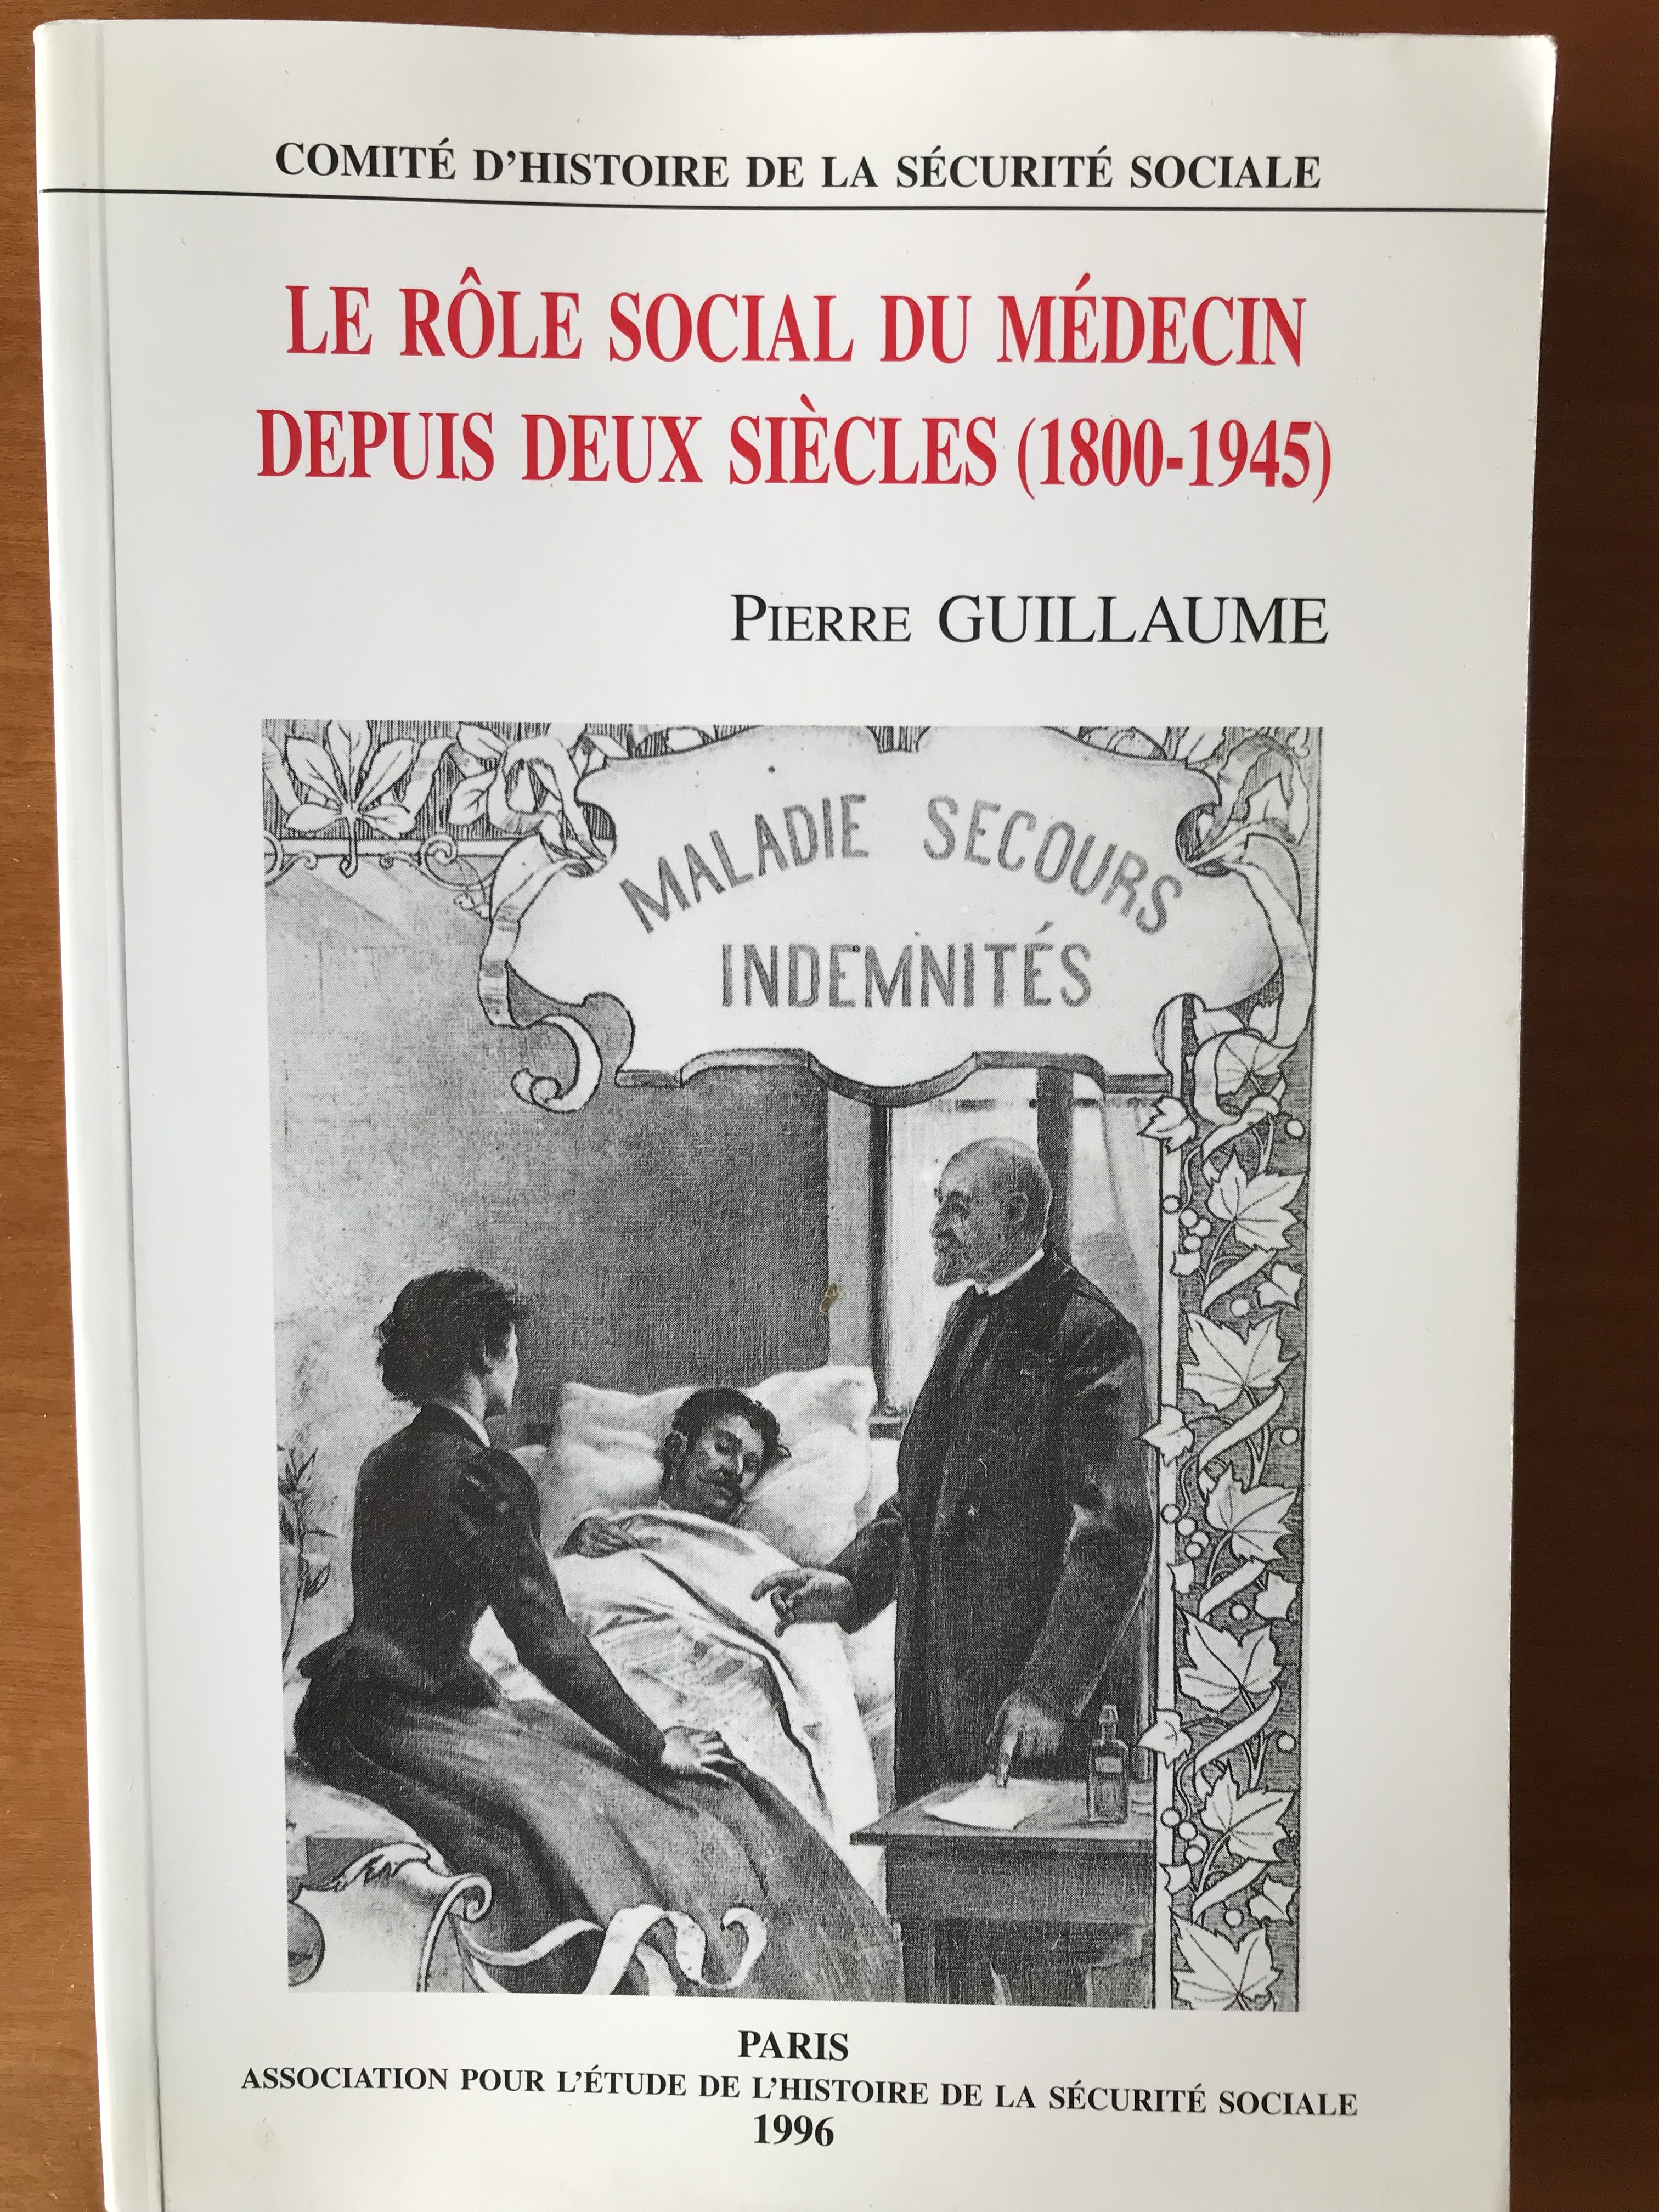 Le rôle social du médecin depuis deux siècles (1800-1945)